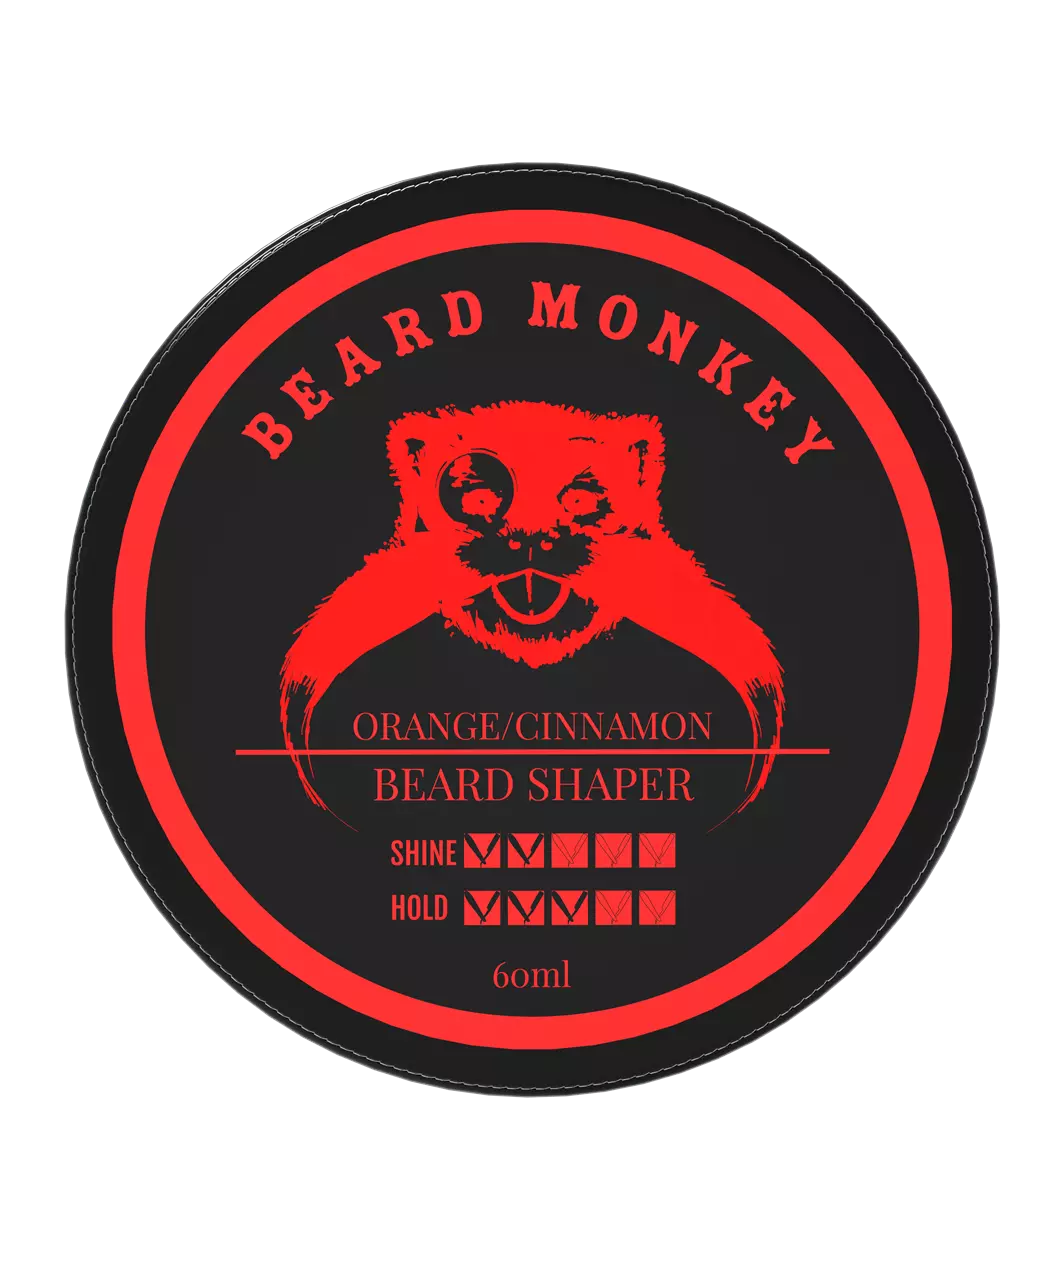 Beard Monkey Beard Shaper 60 g